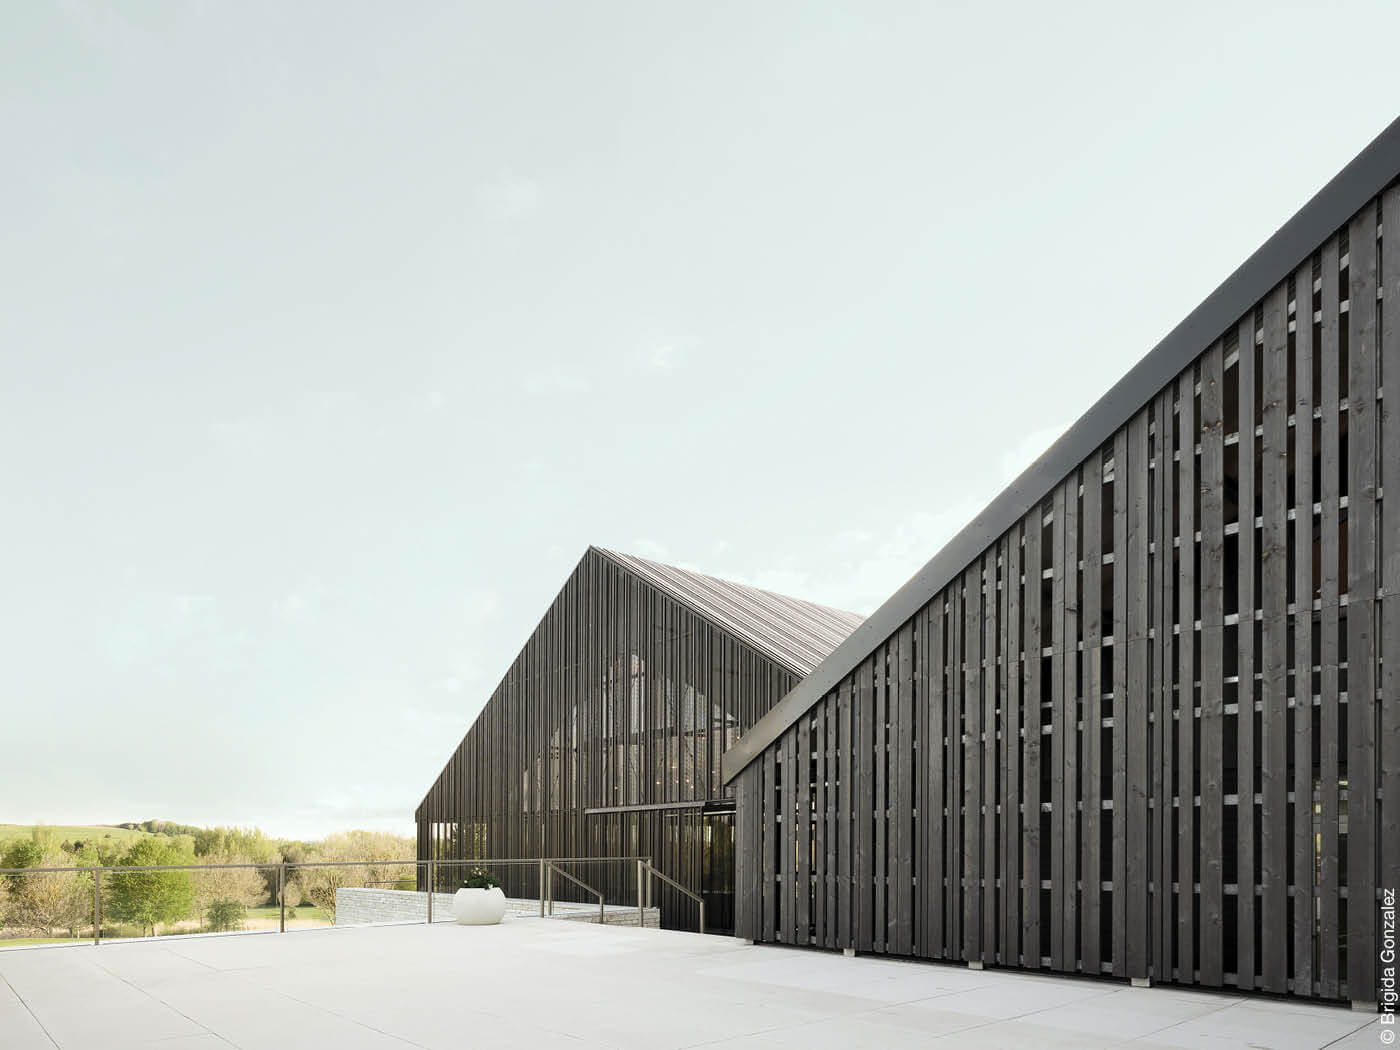 Fassaden mit einer vorgehängten hinterlüfteten Konstruktion in dunkelbraun